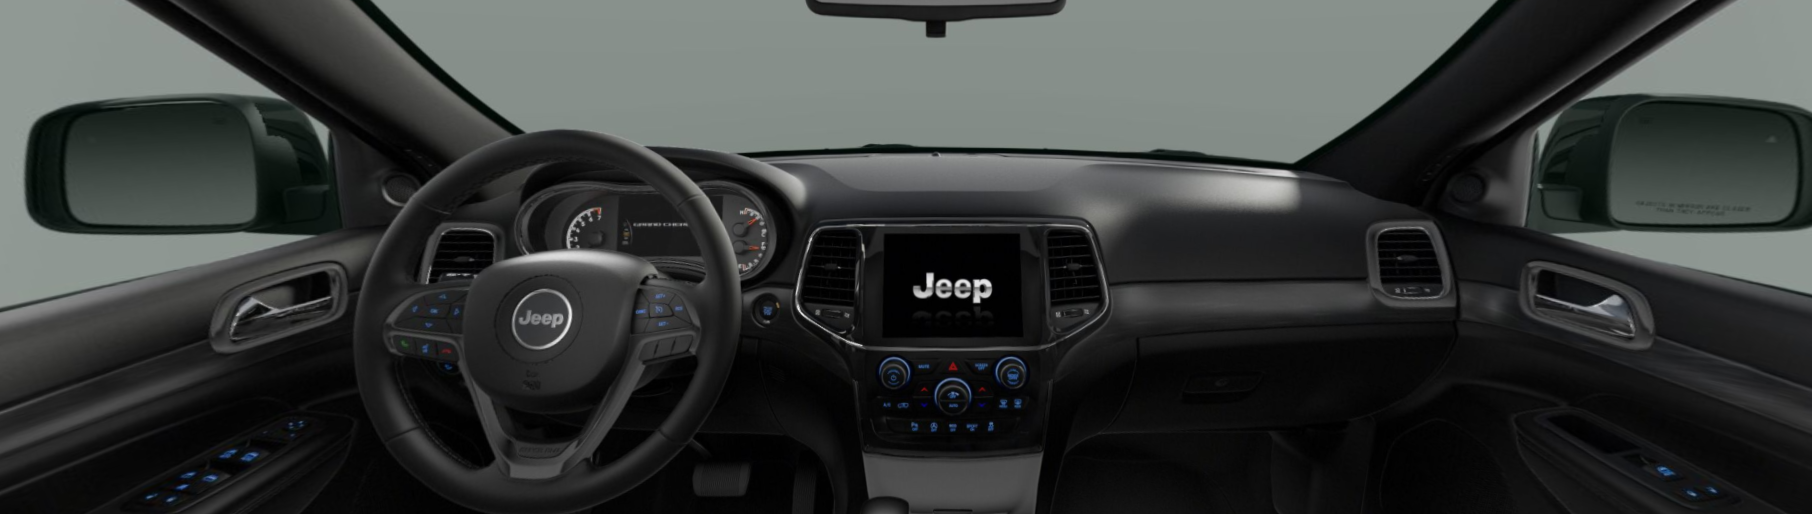 2020 Jeep Grand Cherokee Altitude Front Interior Dash